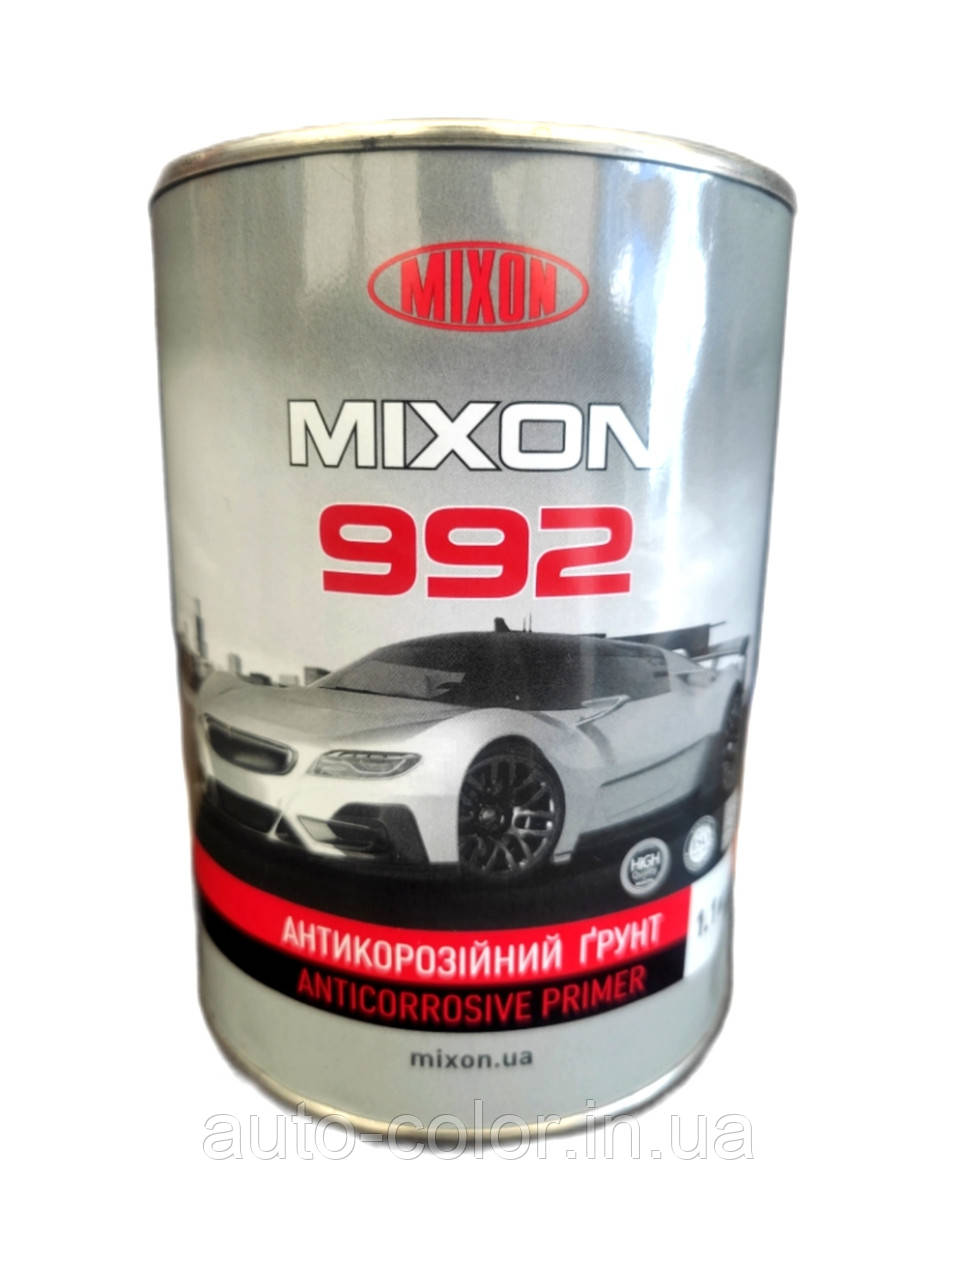 MIXON 992 Ґрунт антикорозійний сірий 1.1 кг